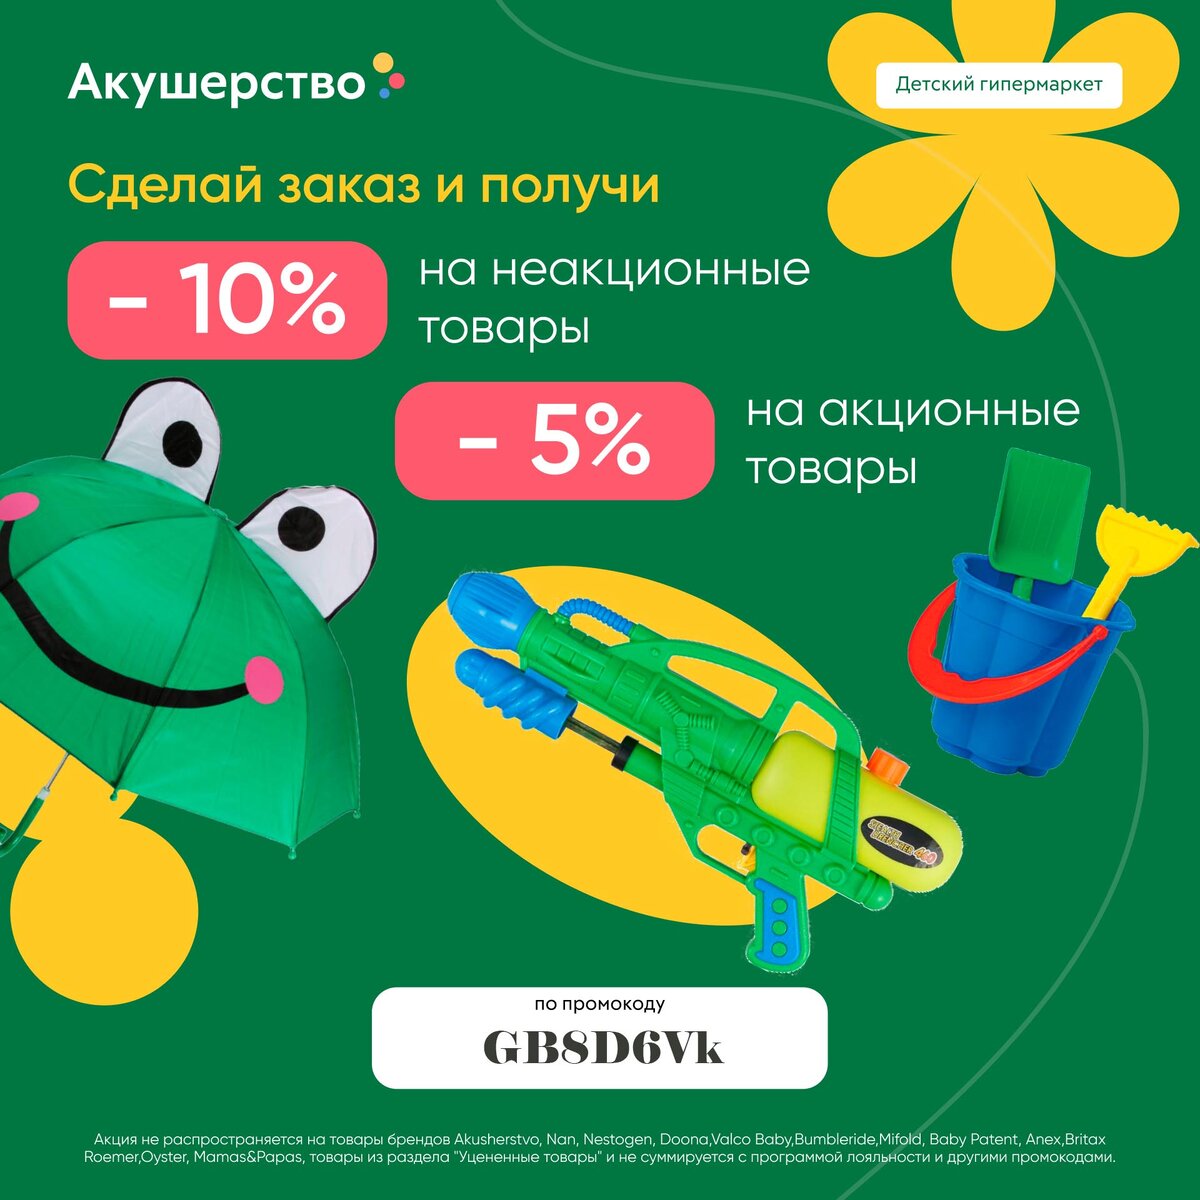 Онлайн-гипермаркет  детских товаров «Акушерство.ру» арендовал около 31 тыс. кв. м в  логистическом парке класса А «Белая Дача» на юго-востоке Москвы. Теперь мы сможем делать еще больше покупок!